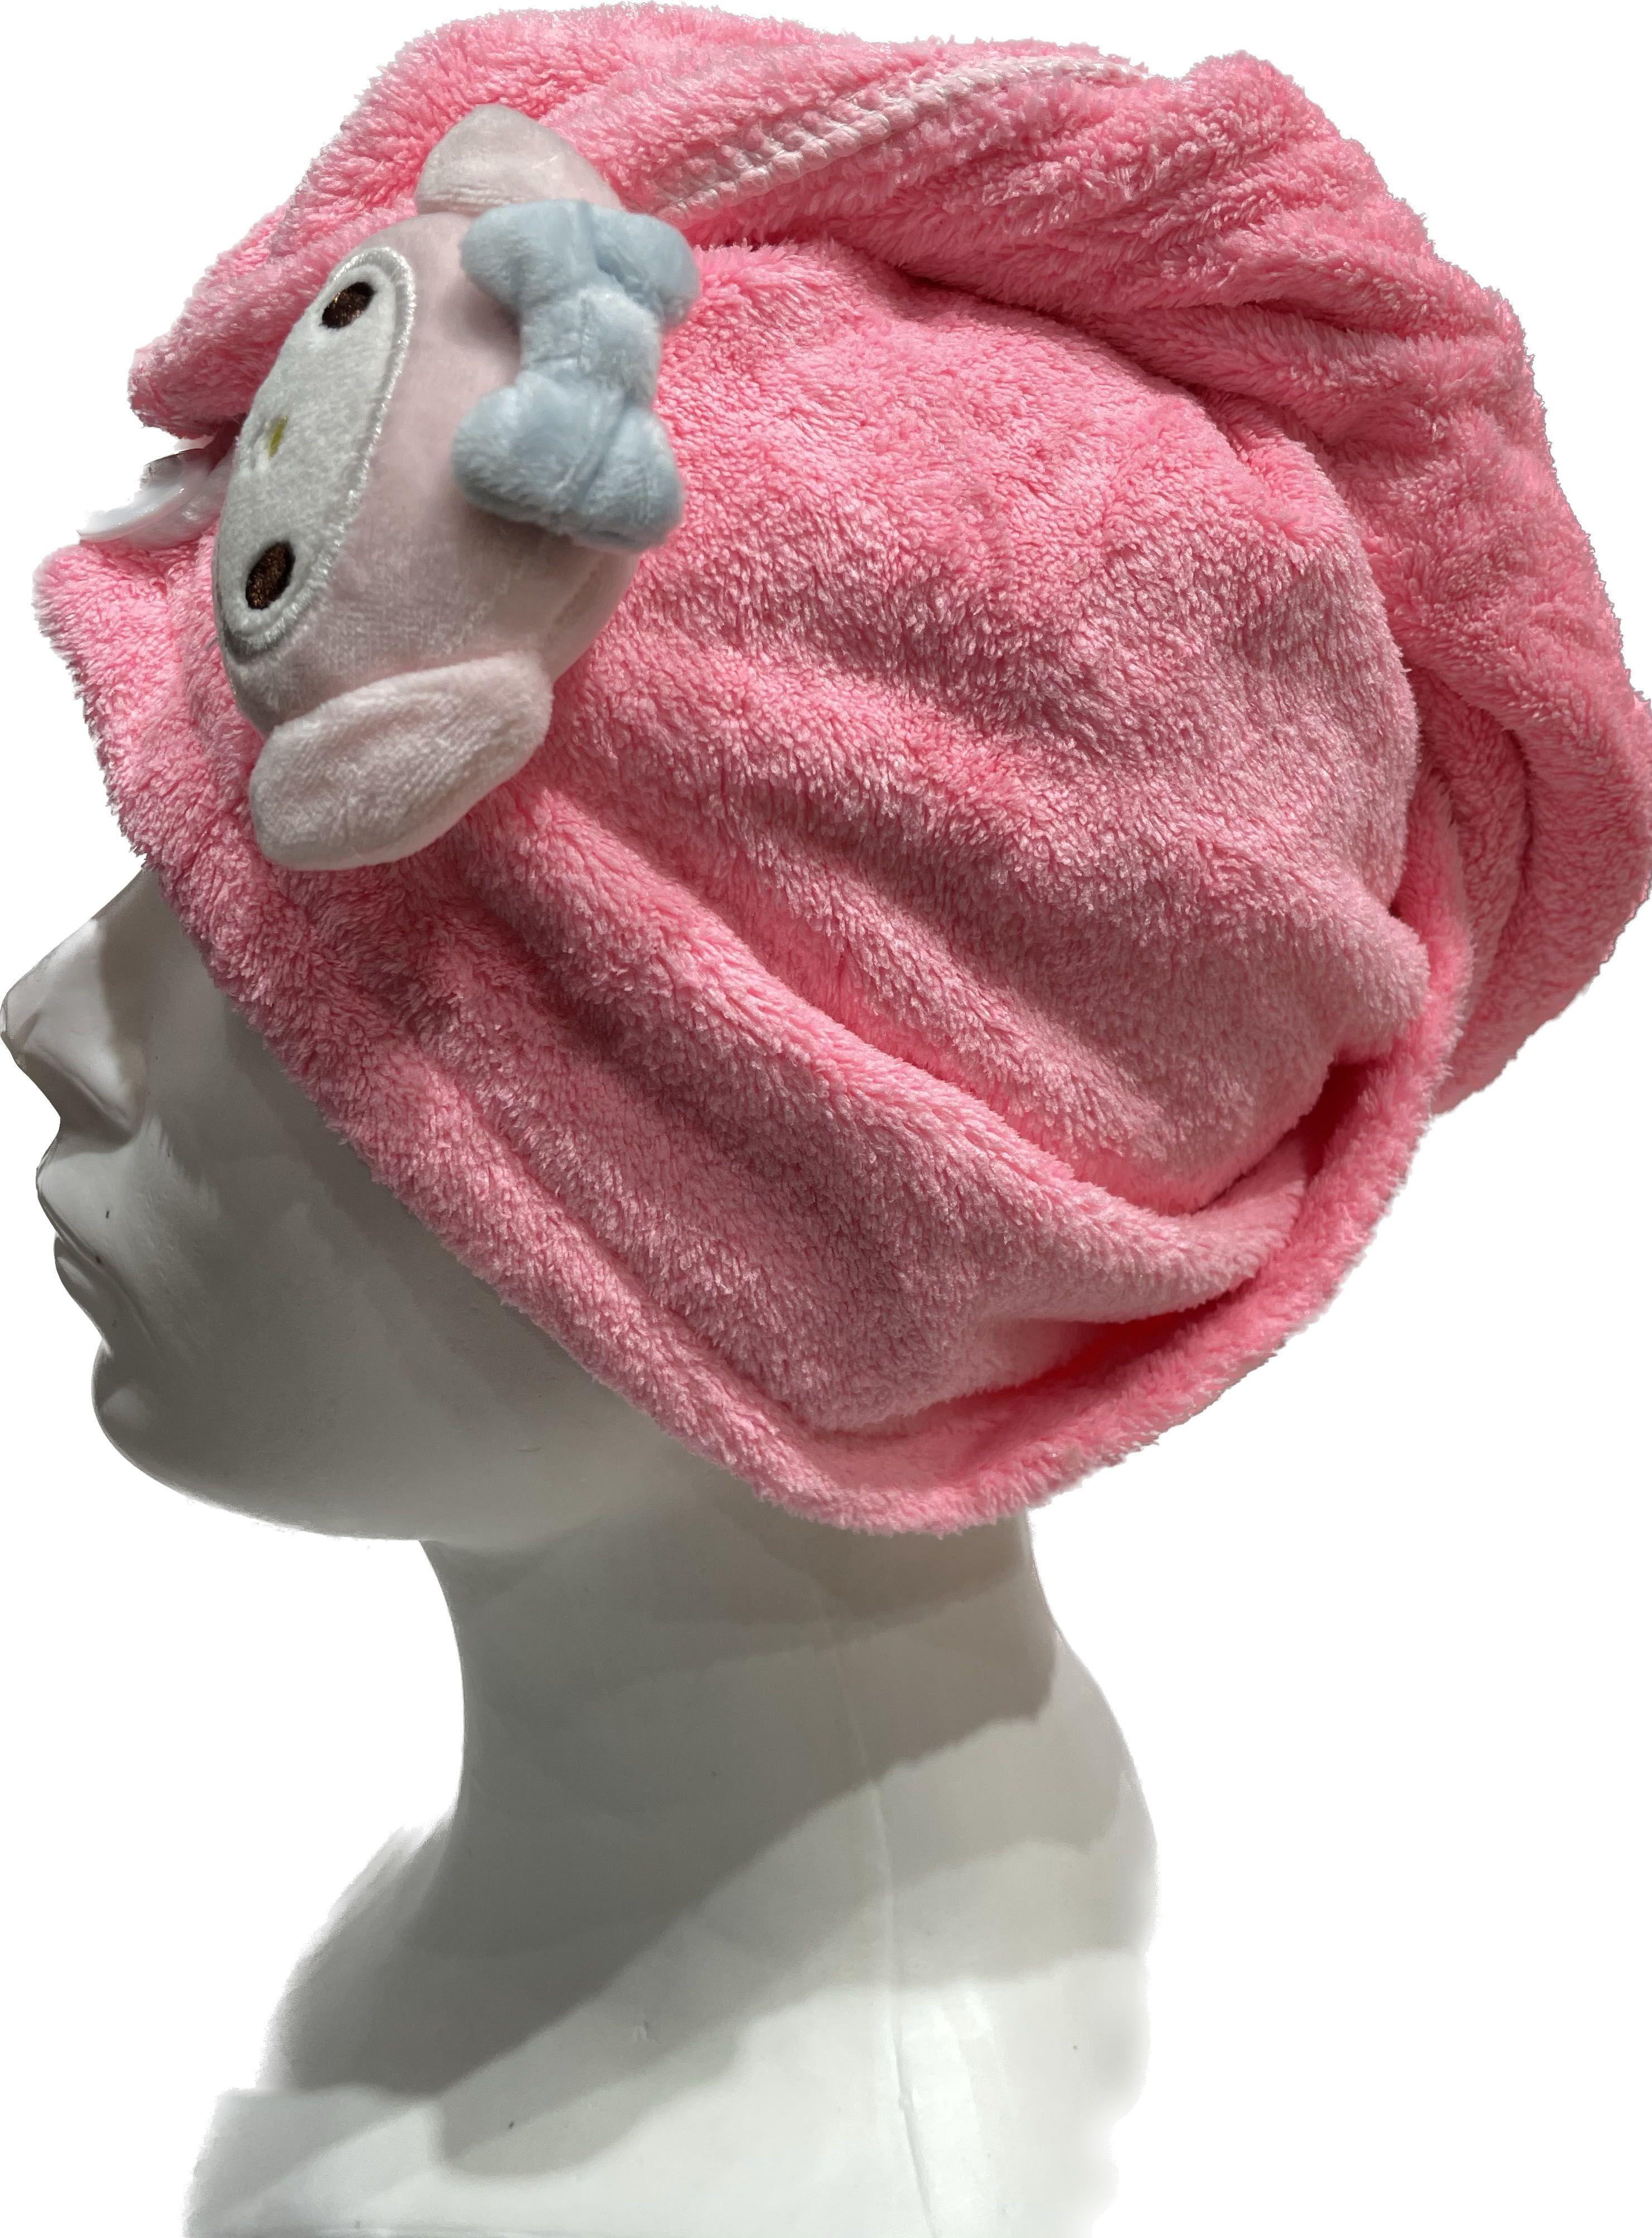 Superchłonny ręcznik do włosów, turban do włosów - wzór małpki